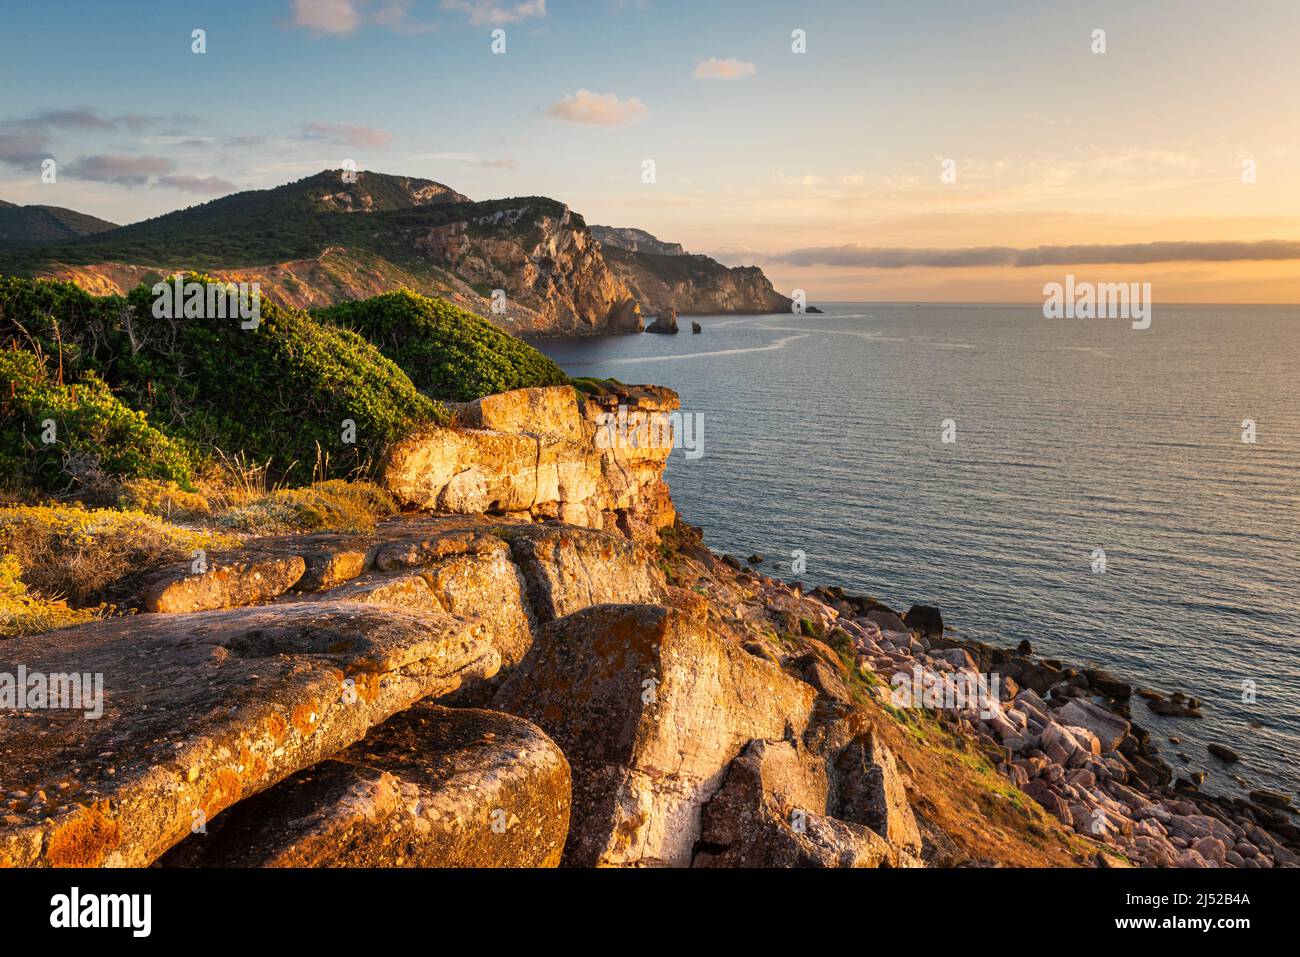 Belle nature de la côte de la Sardaigne - coucher de soleil sur la côte rocheuse du Parc naturel de Porto Conte, Torre del Porticciolo, Sardaigne, Italie Banque D'Images